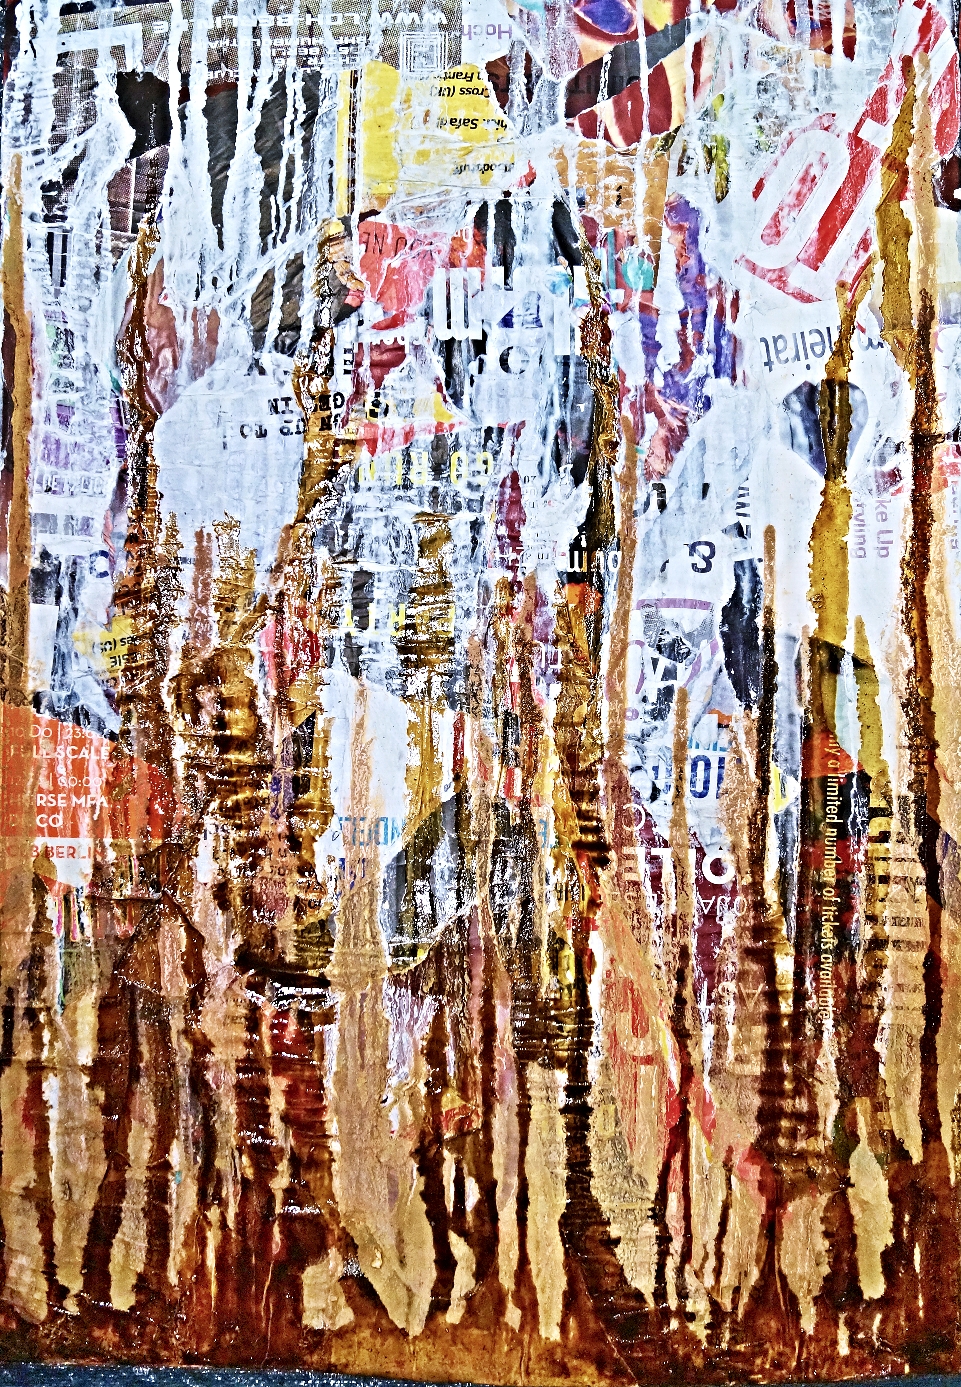 JoDDpopARTberlin 1

50x40 cm 20.Januar 2016

Decollage / Collage von Plakatabrissen in der Kastanienallee in Berlin Prenzlauer Berg